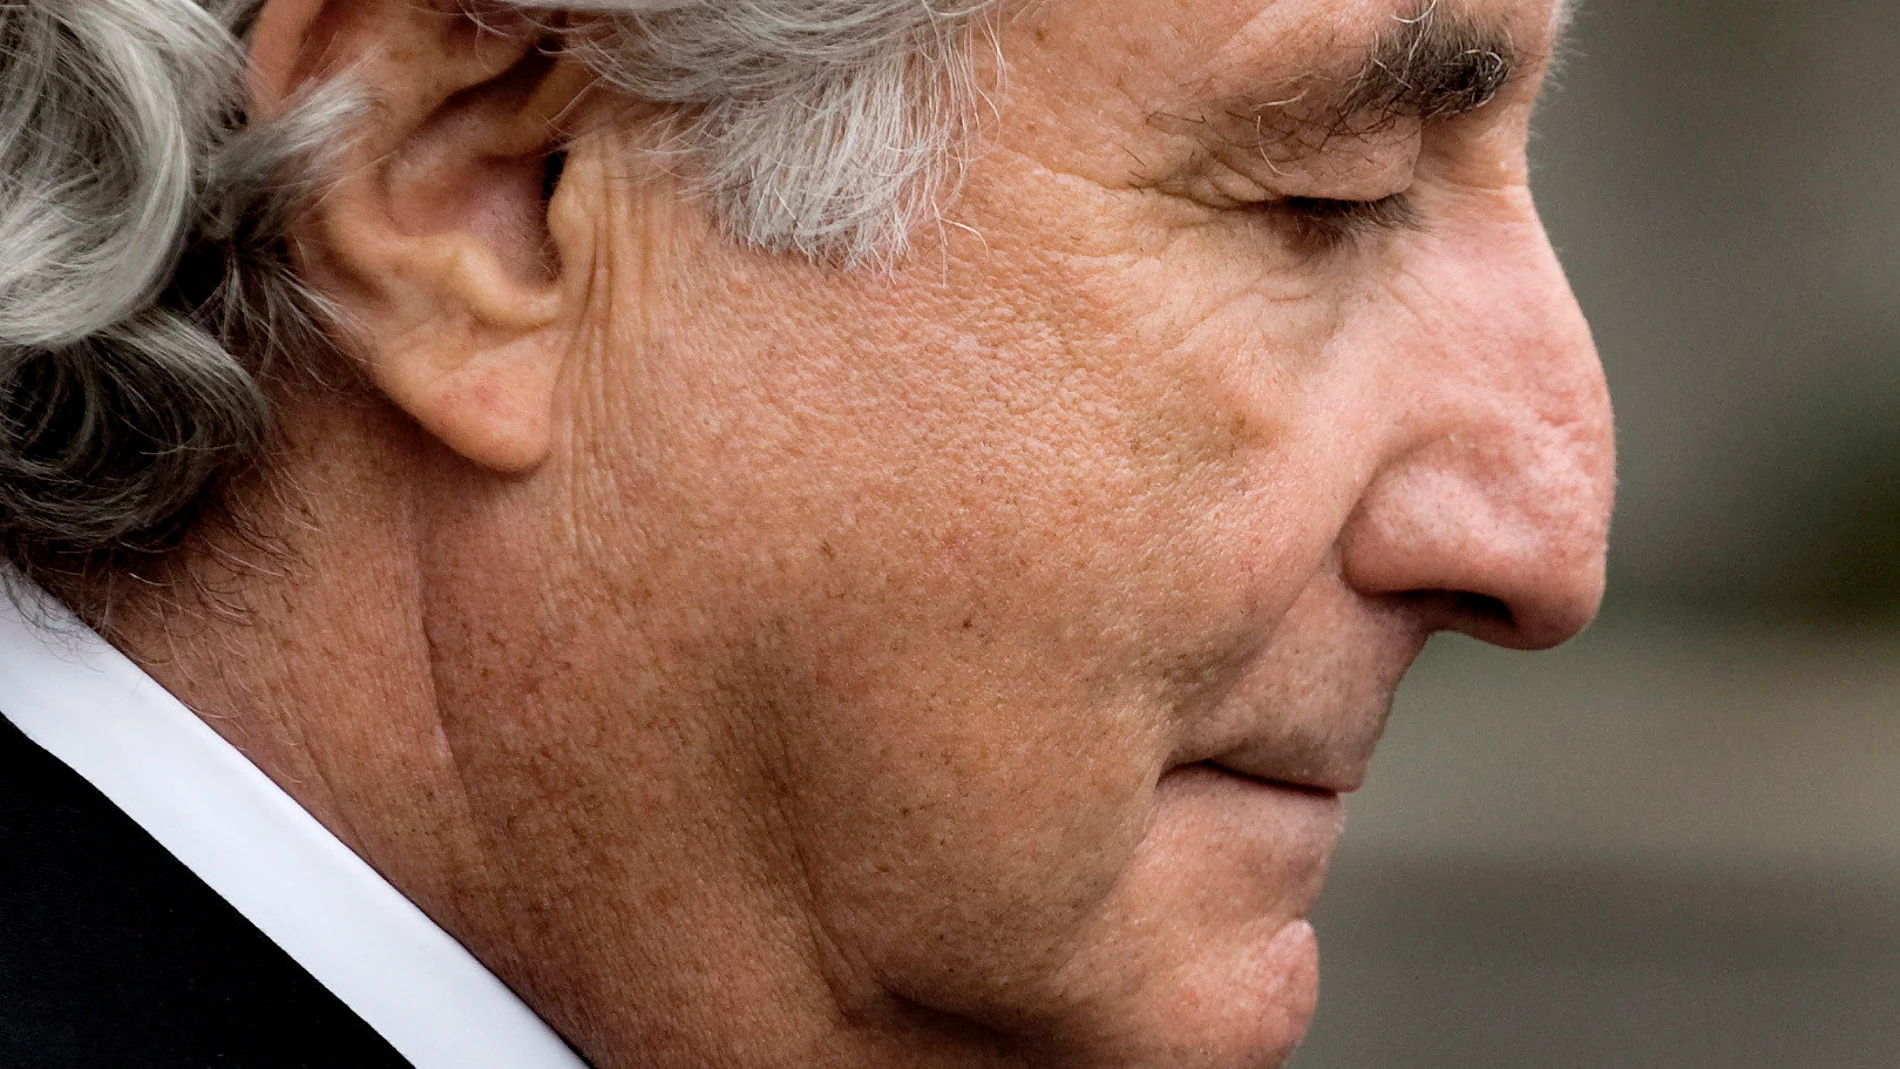 El inversor estadounidense Bernie Madoff condenado a 150 años de prisión por una estafa de casi 65.000 millones de dólares